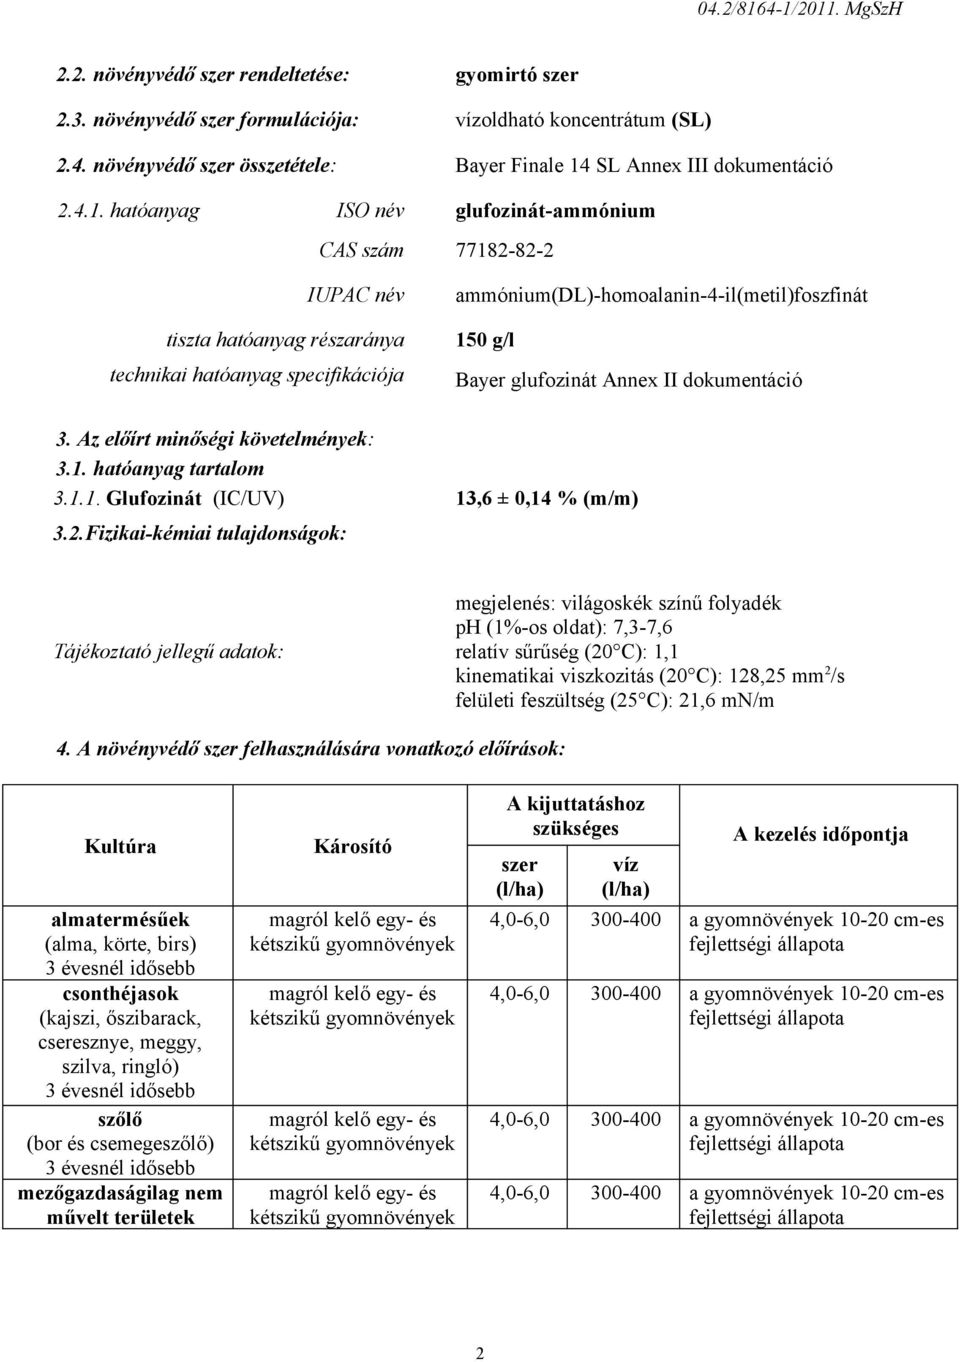 glufozinát Annex II dokumentáció 3. Az előírt minőségi követelmények: 3.1. hatóanyag tartalom 3.1.1. Glufozinát (IC/UV) 13,6 ± 0,14 % (m/m) 3.2.